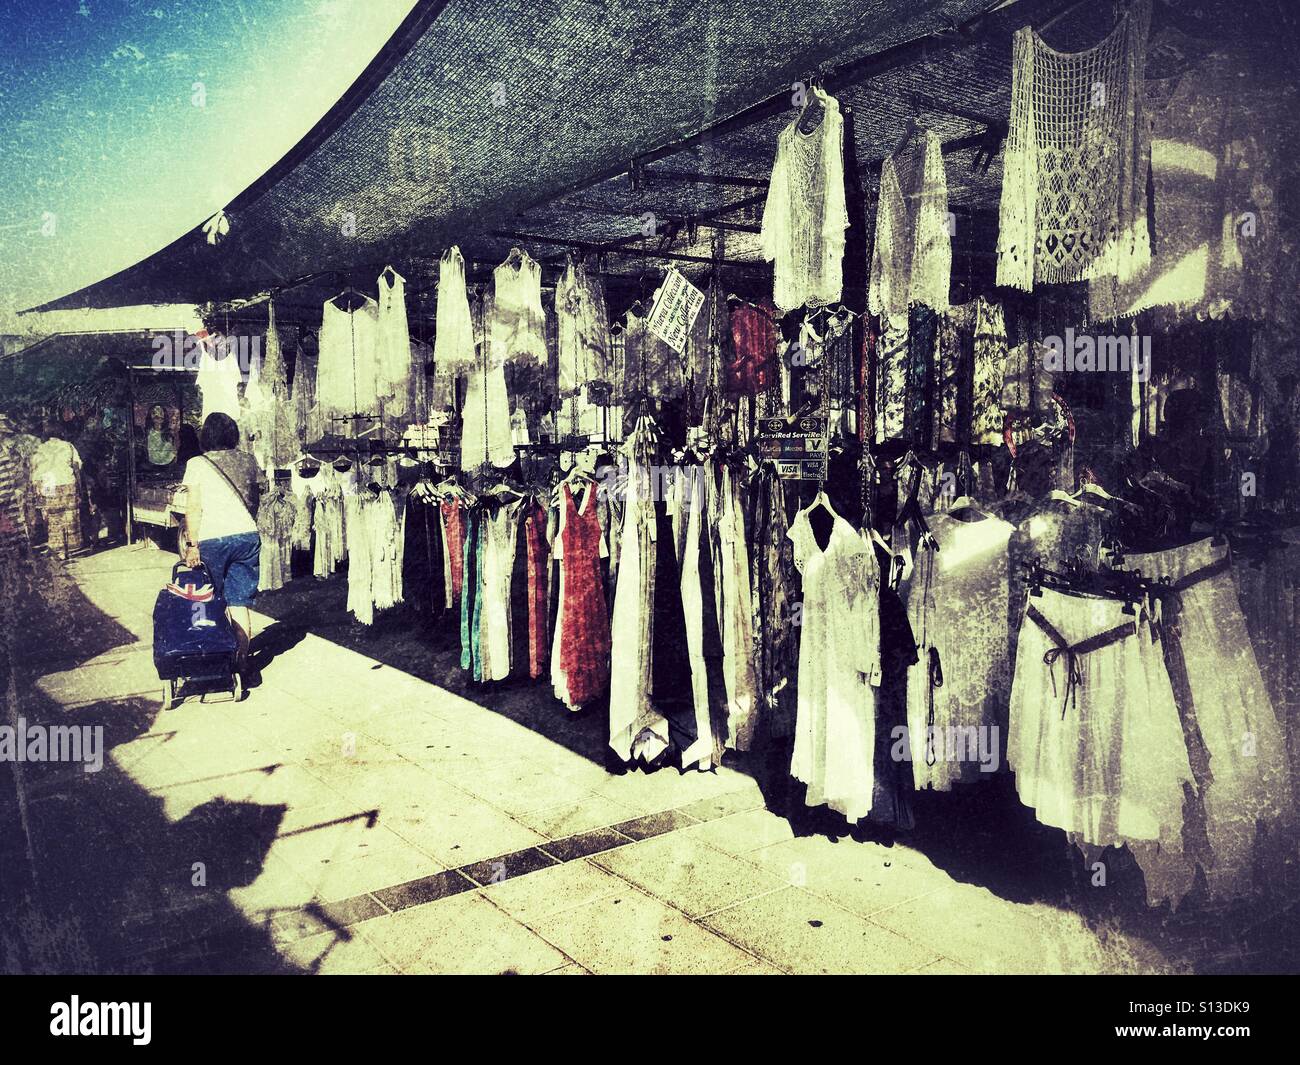 Puesto en el mercado de de ropa blanca. Jávea, Alicante, España Fotografía de stock - Alamy